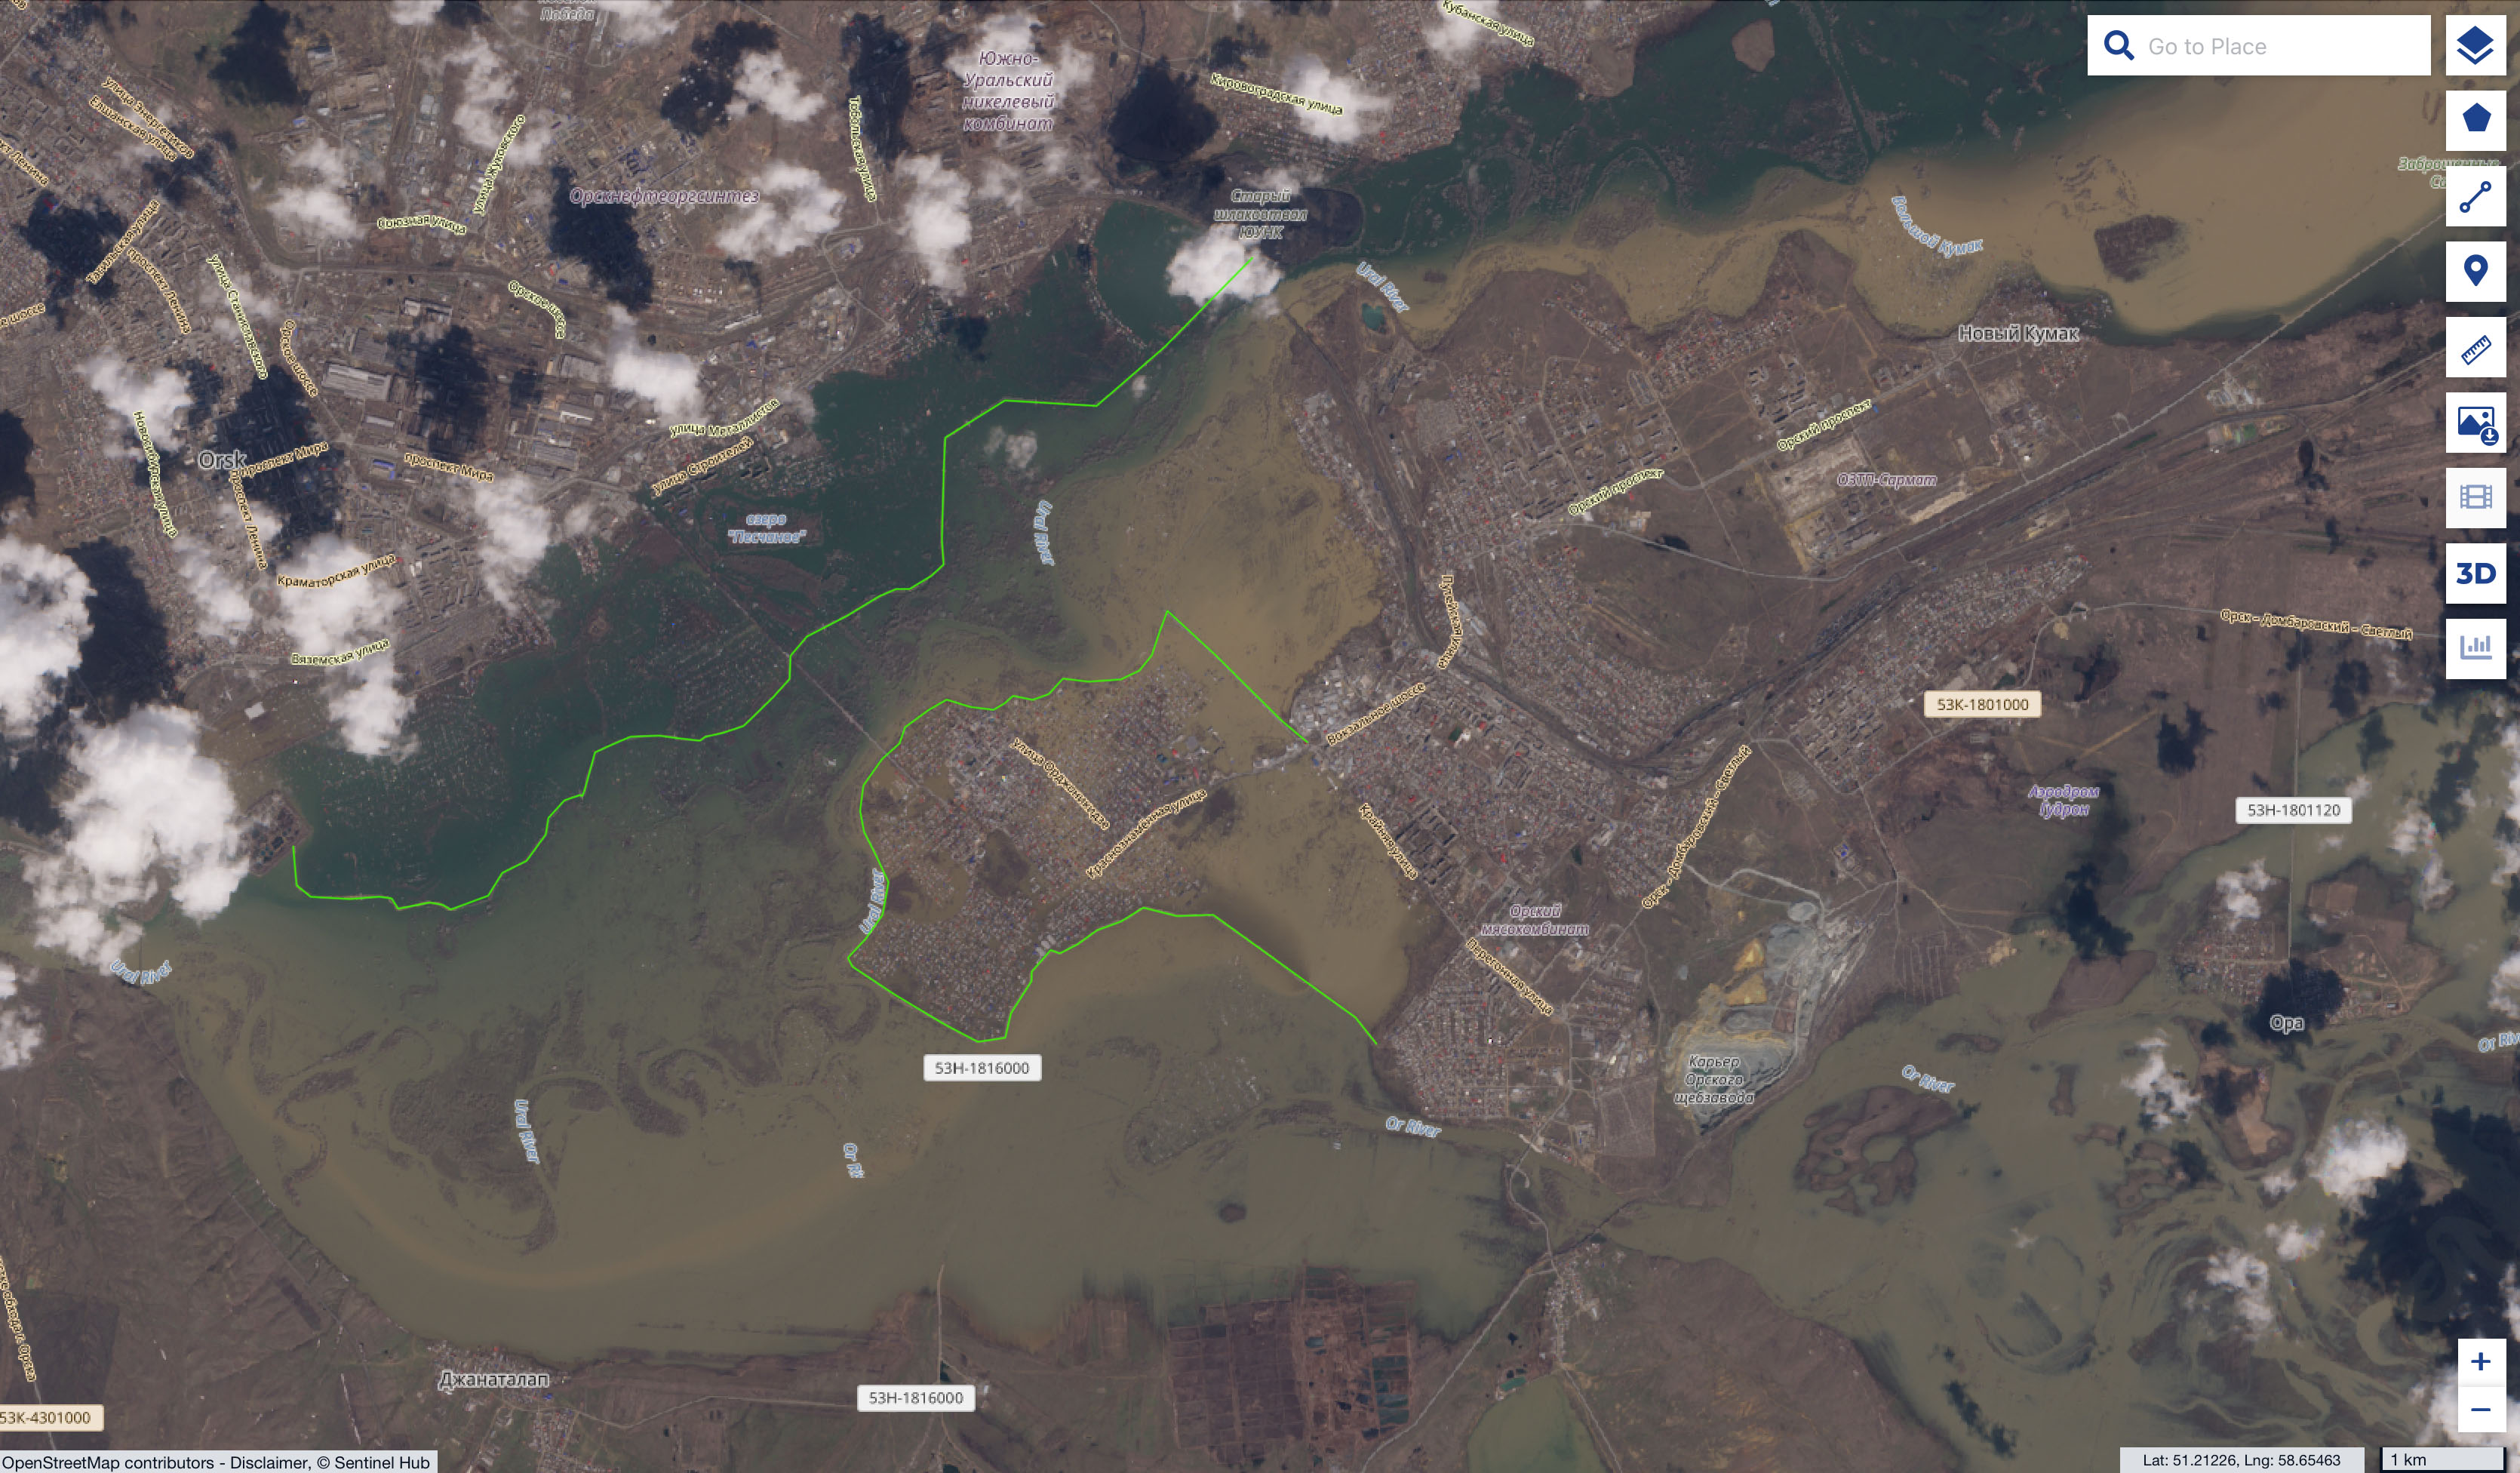 De overstroomde stad Ormsk met daarin in groen aangegeven de ligging van de dijken.